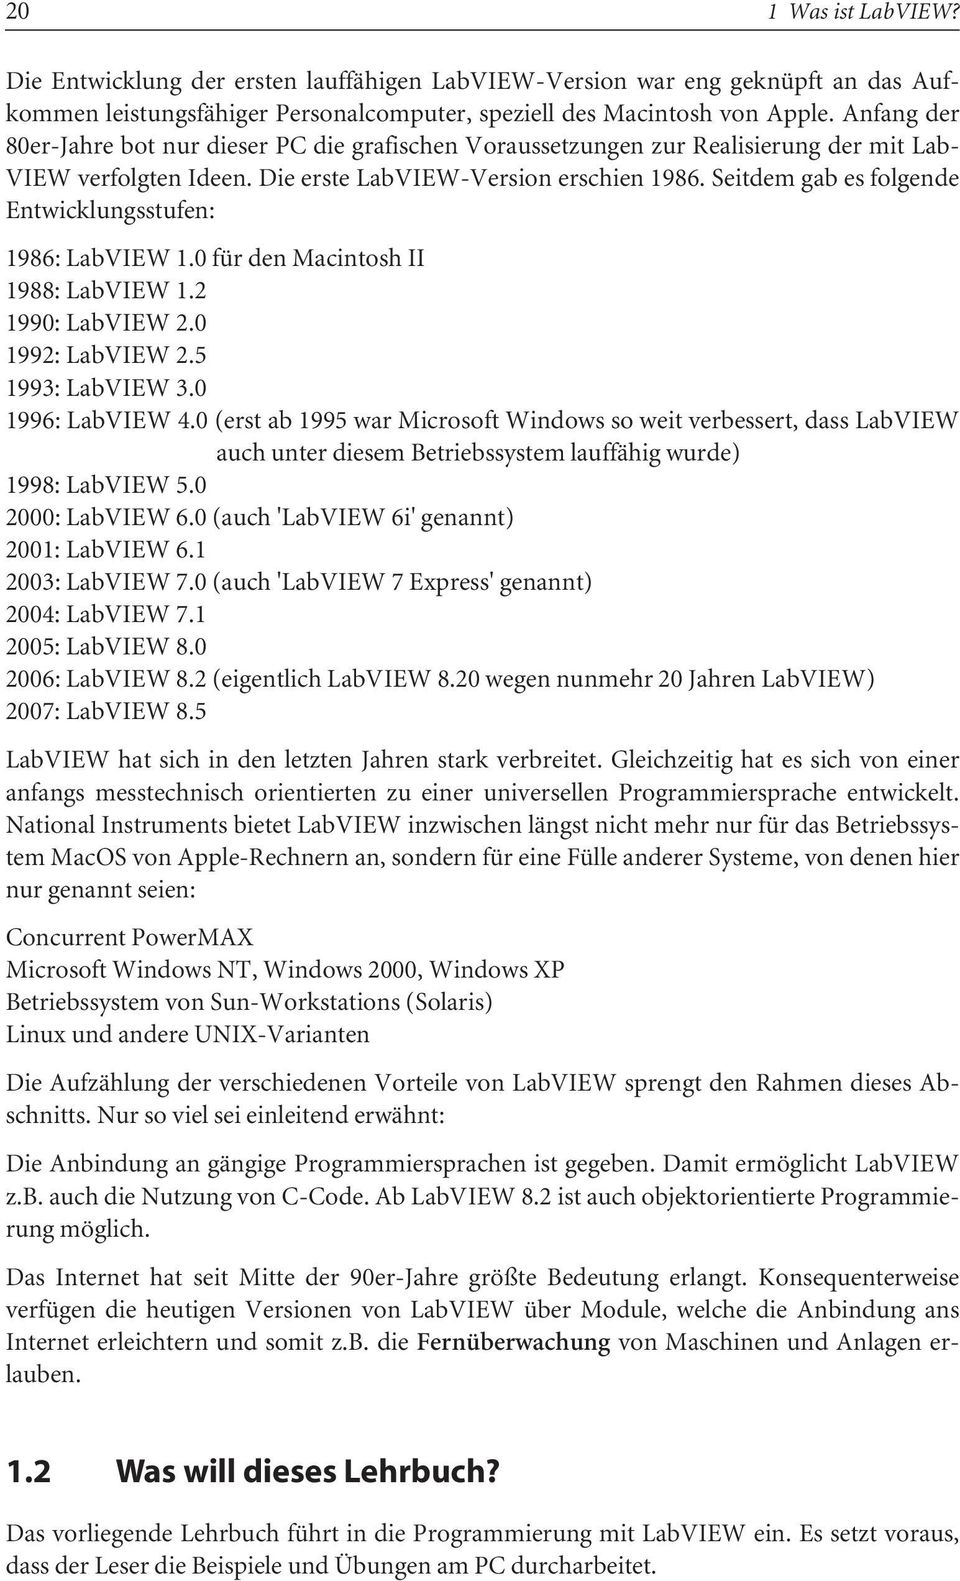 Seitdem gab es folgende Entwicklungsstufen: 1986: LabVIEW 1.0 für den Macintosh II 1988: LabVIEW 1.2 1990: LabVIEW 2.0 1992: LabVIEW 2.5 1993: LabVIEW 3.0 1996: LabVIEW 4.